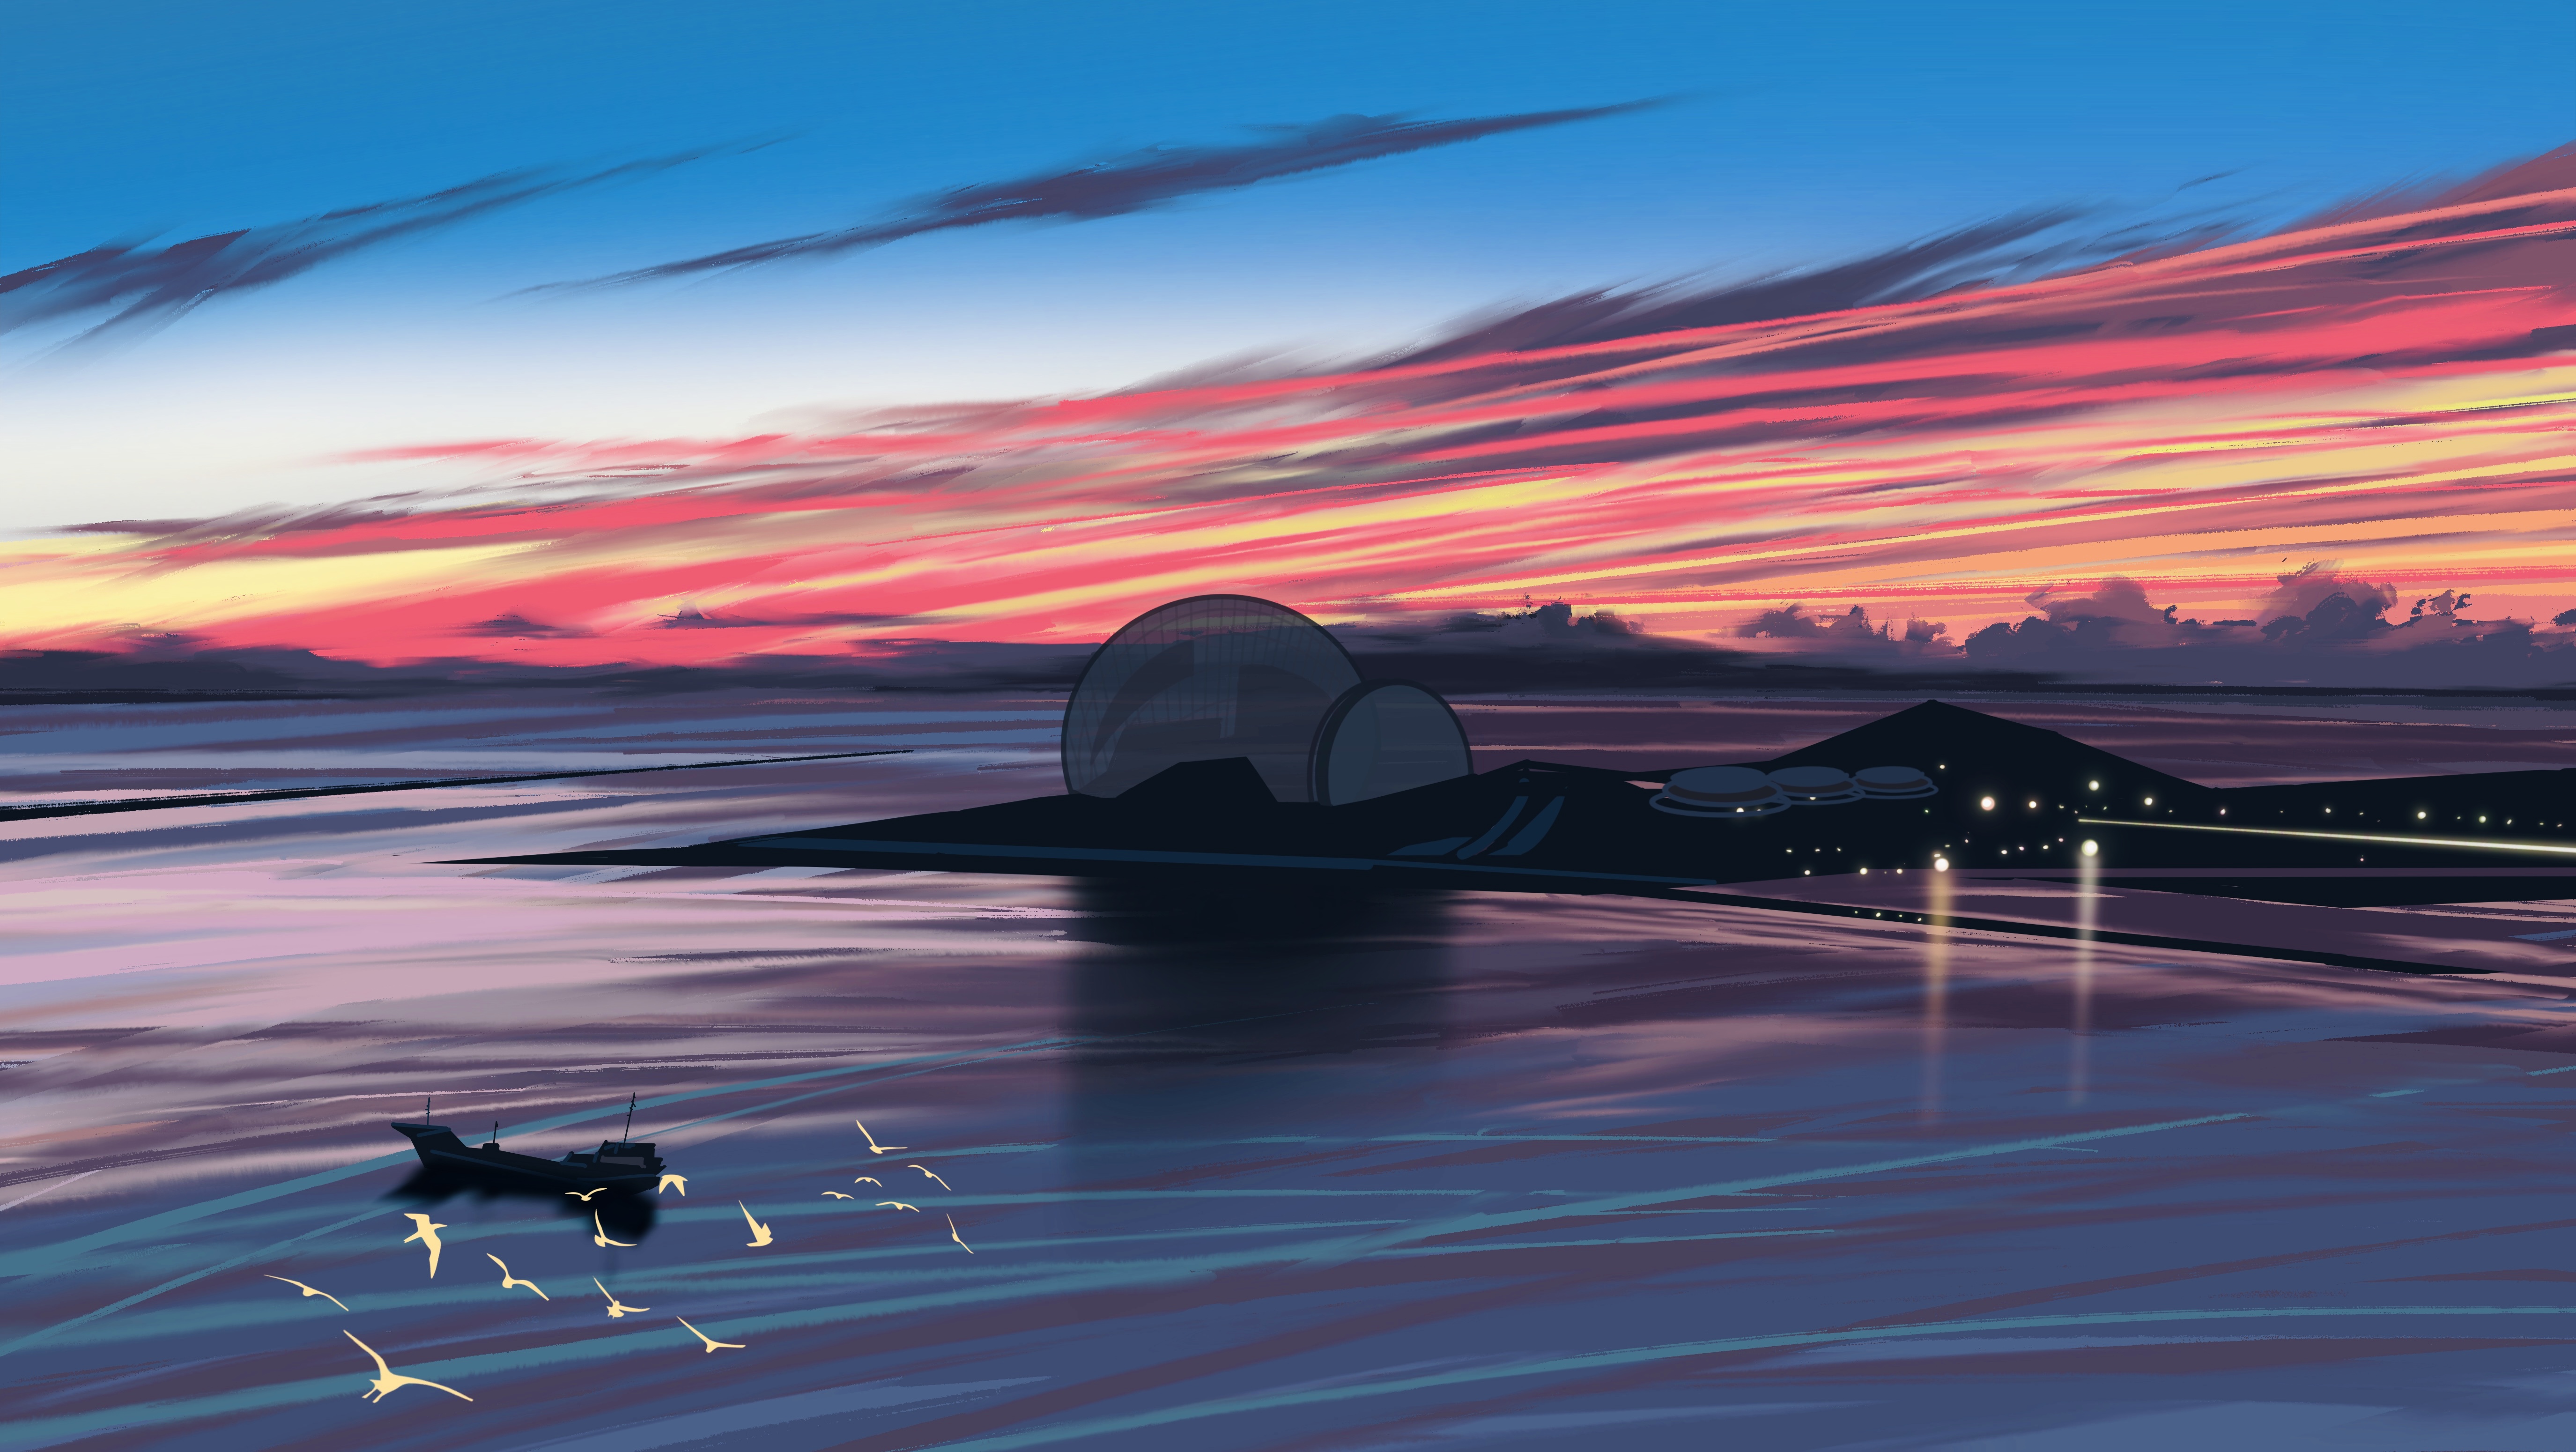 Download mobile wallpaper Landscape, Sunset, Artistic for free.